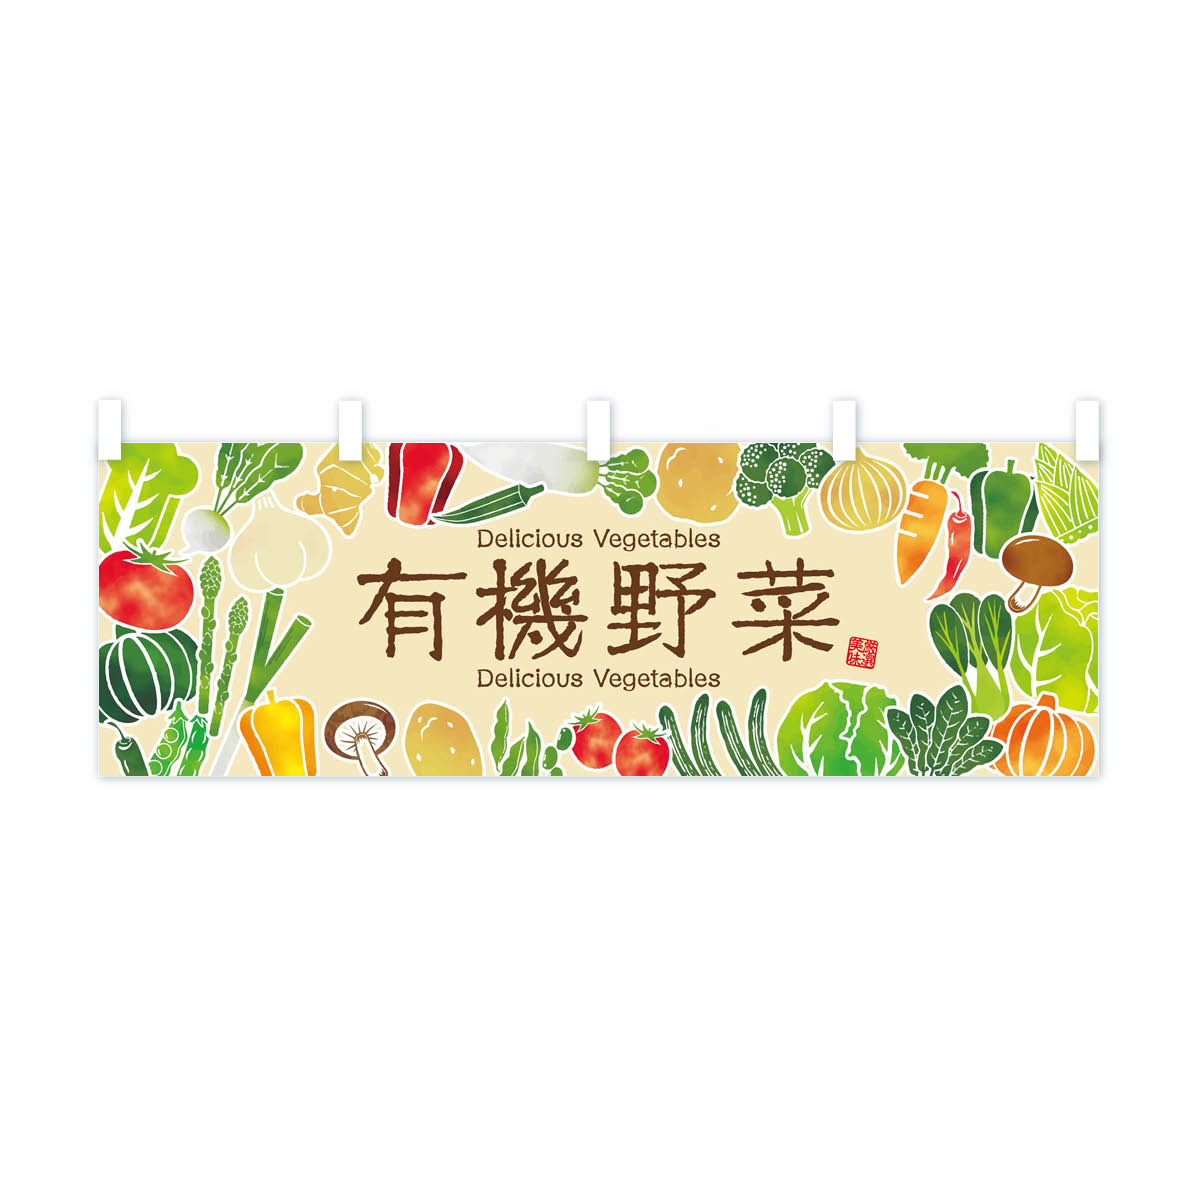 【ネコポス送料360】 横幕 有機野菜・イラスト 3L43 新鮮野菜・直売